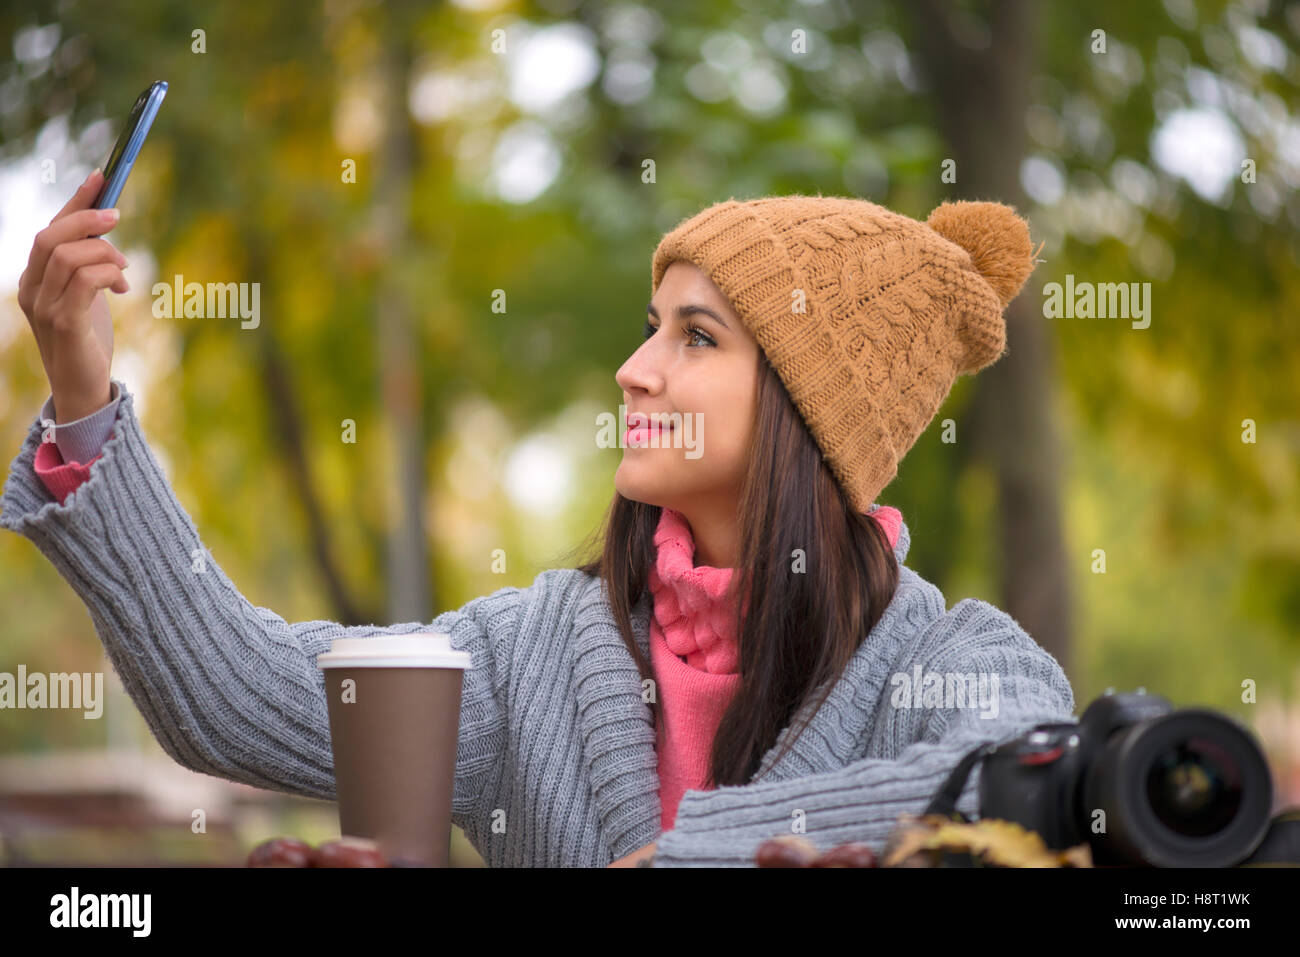 Technologie Internet et de bonheur concept. Femme heureuse girl taking self photo smartphone selfies avec appareil photo à l'extérieur à l'automne Banque D'Images